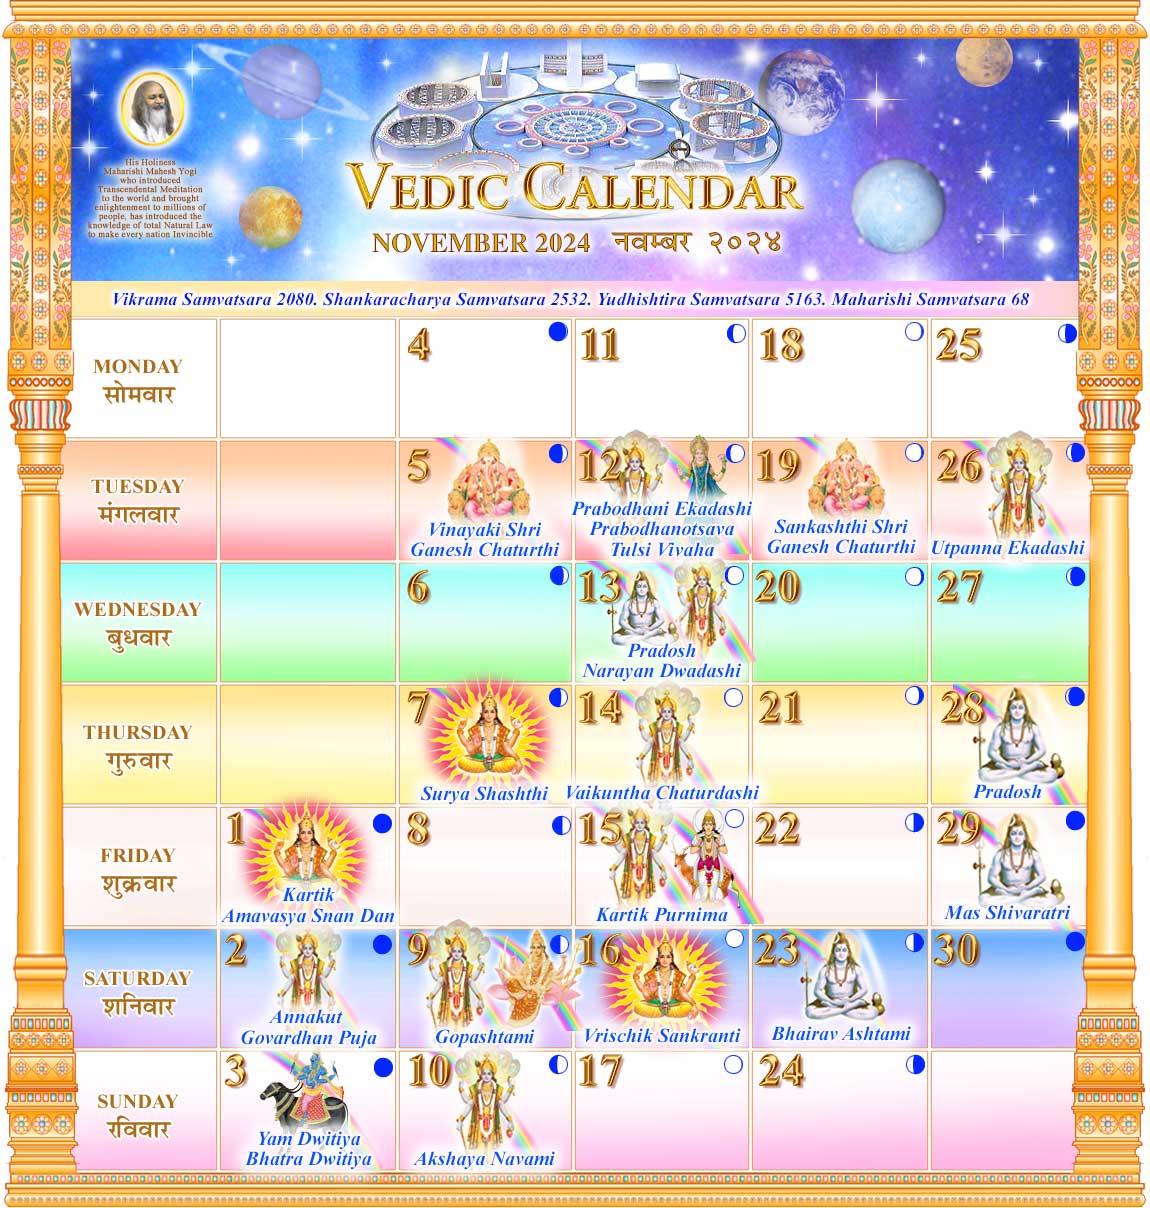 Vedic Calendar November